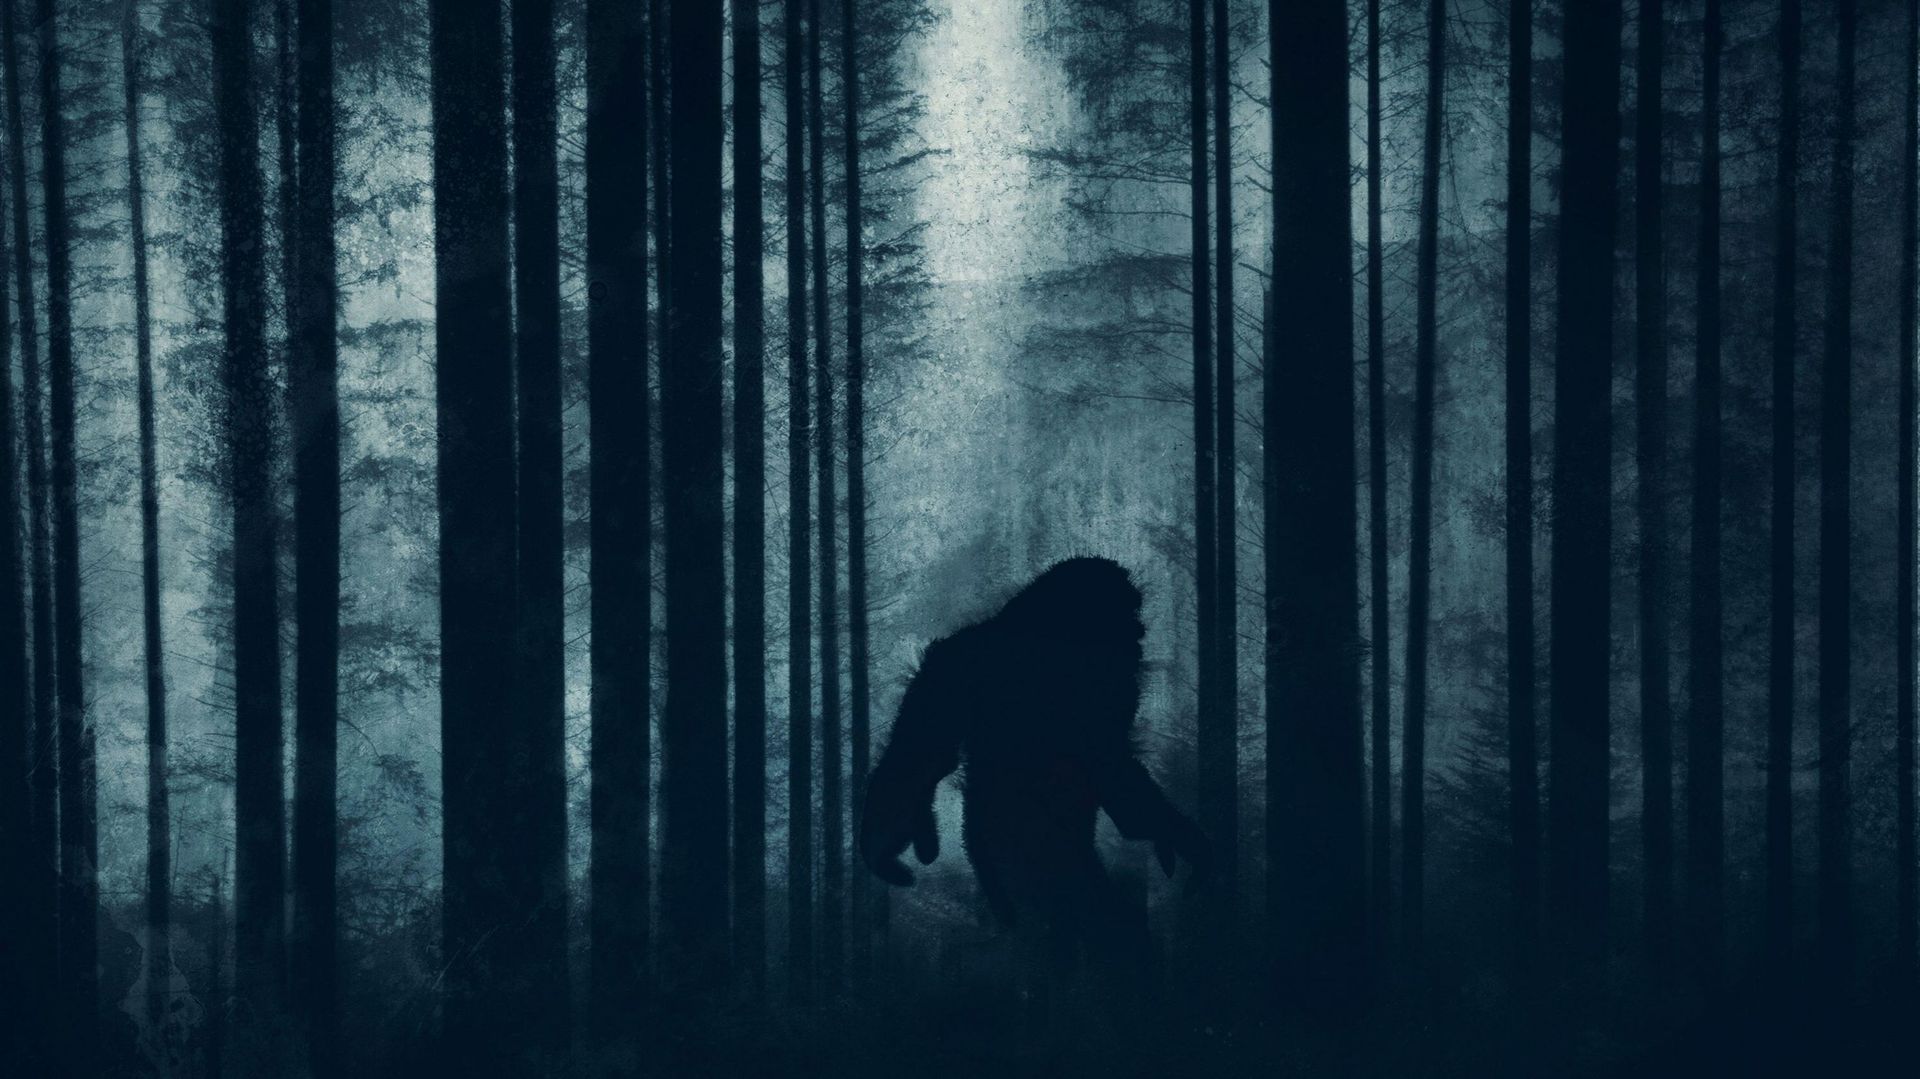 Le Bigfoot (appelé aussi Sasquatch) hanterait les gigantesques forêts de la Californie du nord, de l’état de Washington et de la Colombie britannique